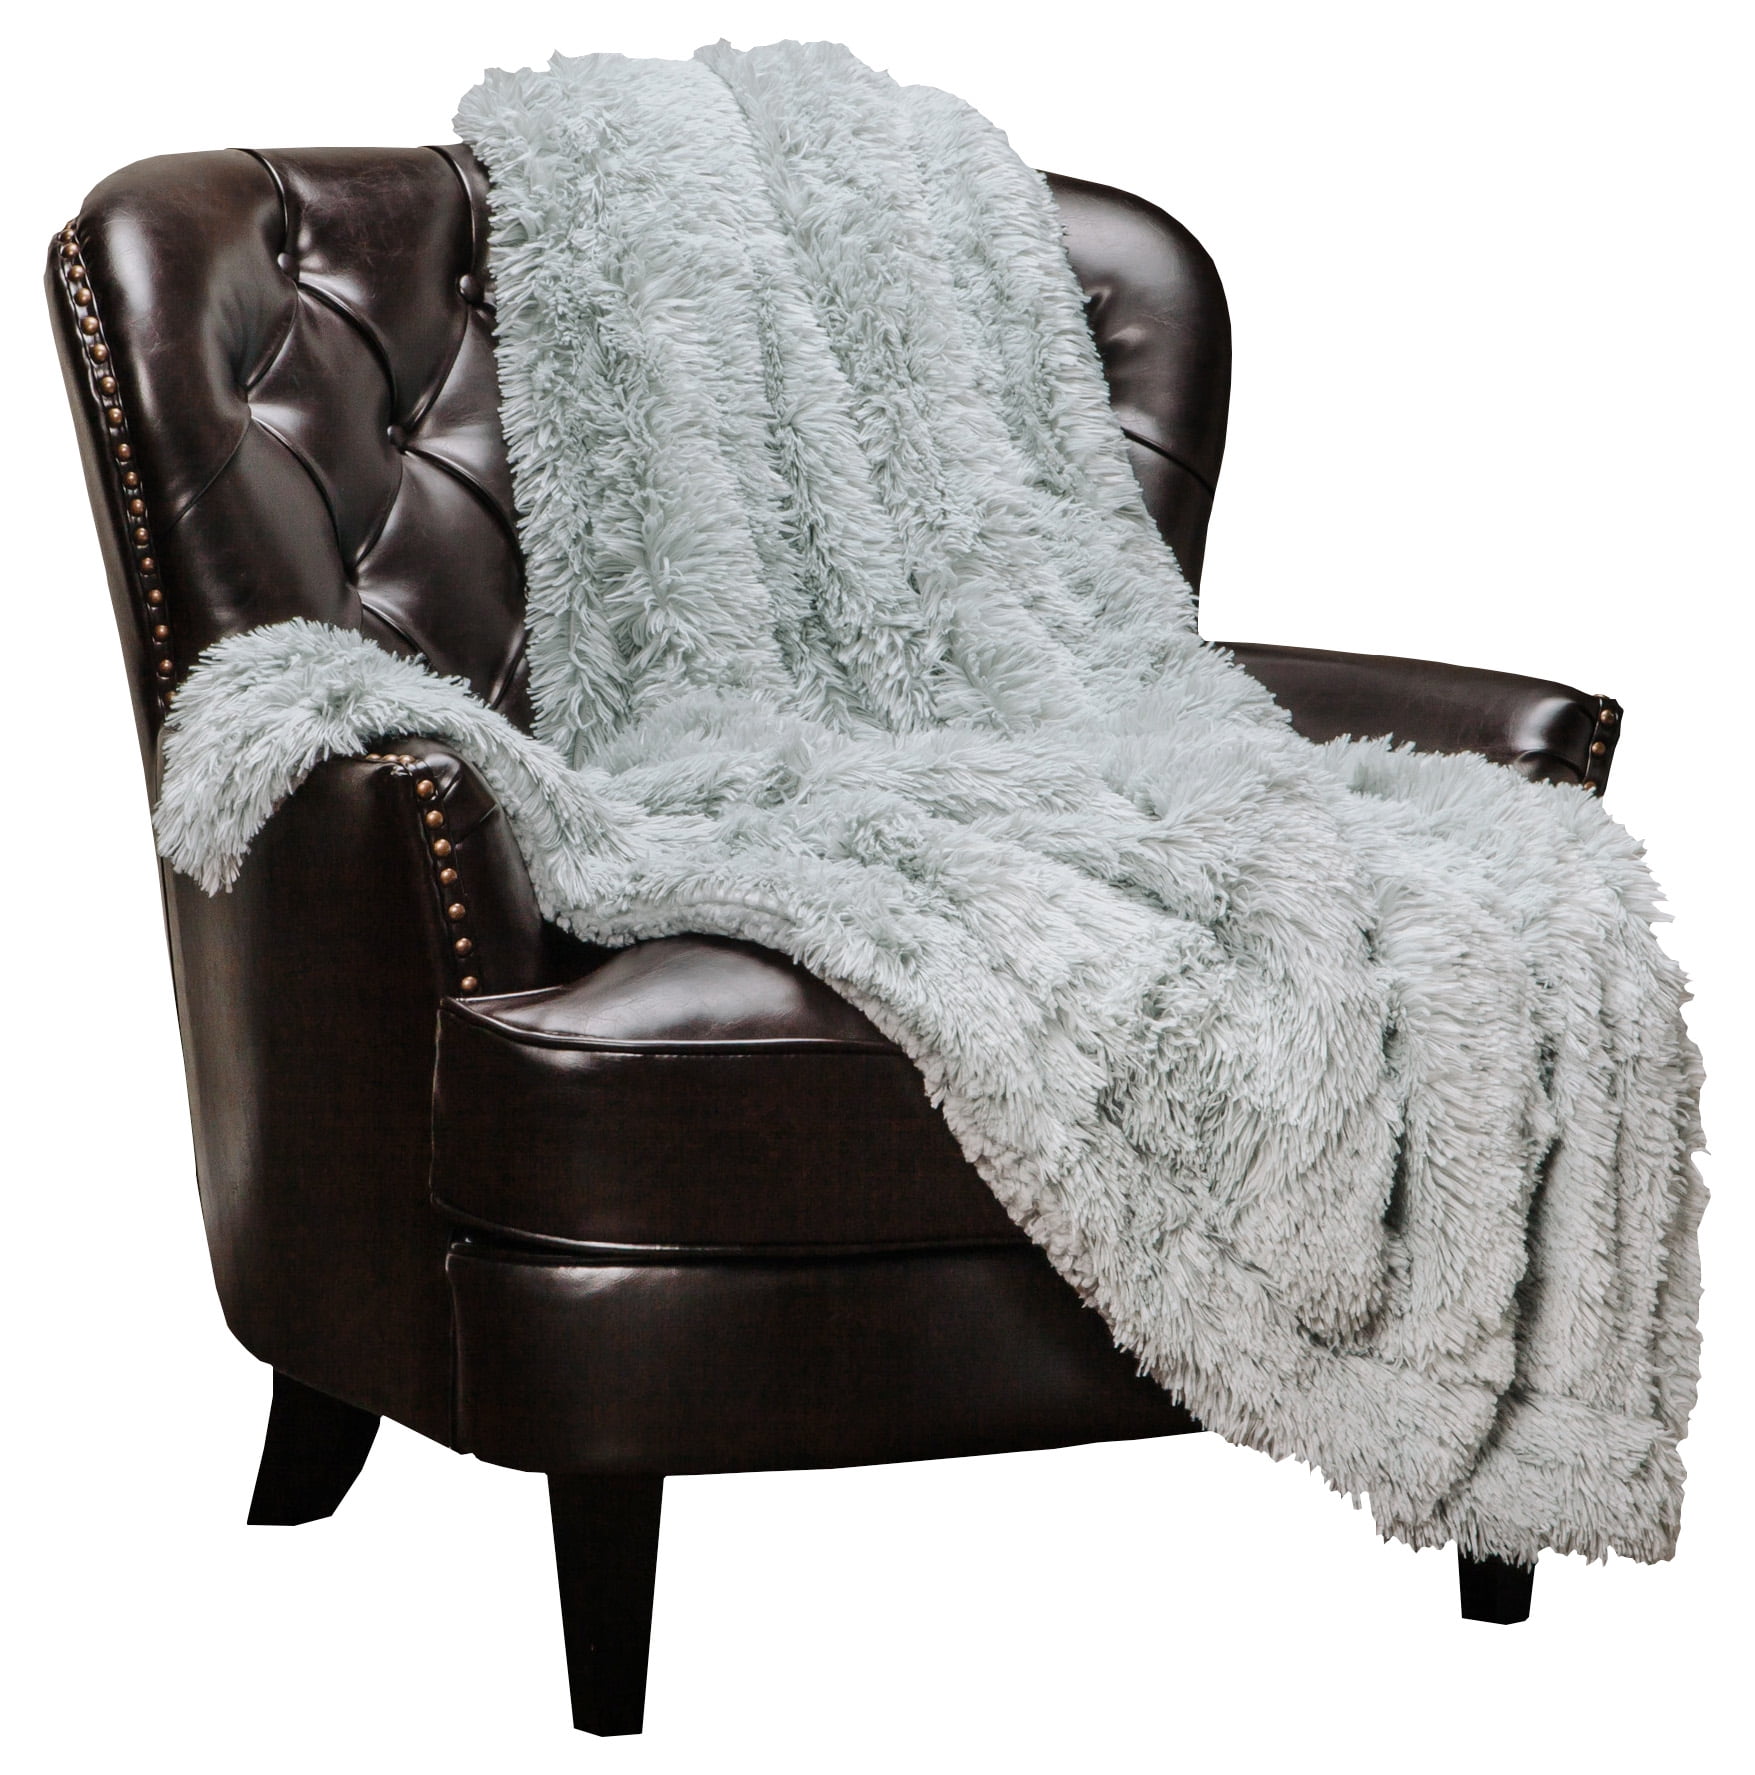 Chanasya Super Soft Shaggy Longfur Throw BlanketSnuggly Fuzzy Faux Fur 